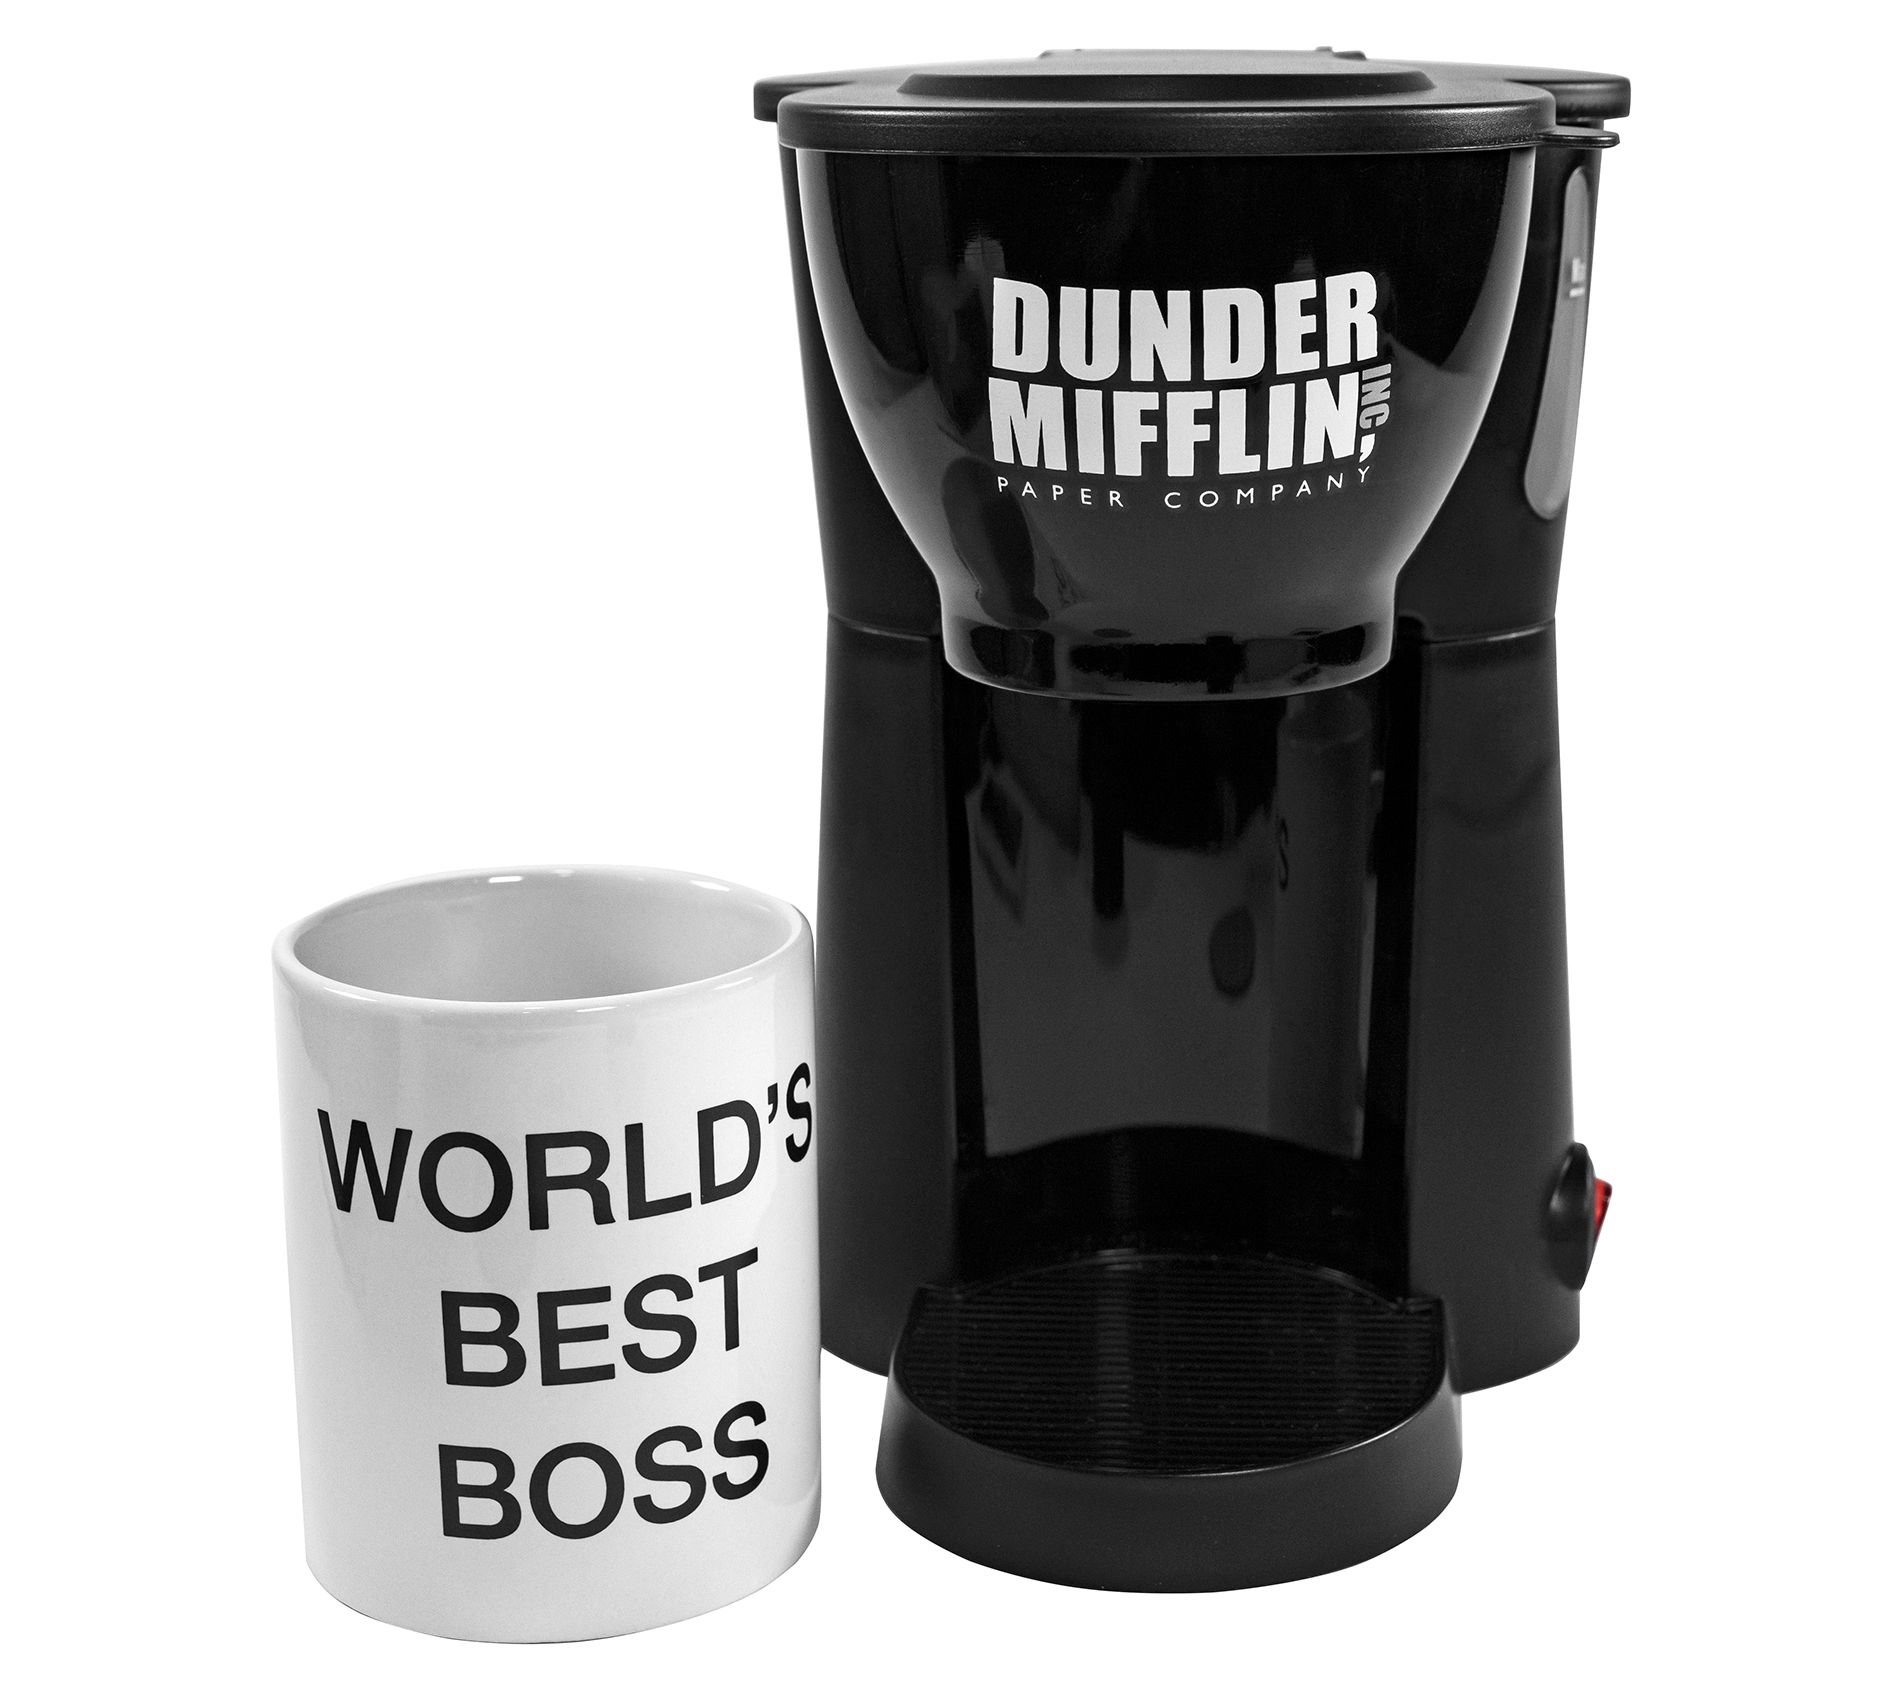 Melitta Take 2 Dual Travel Mug Coffee Maker by Salton Brand New!